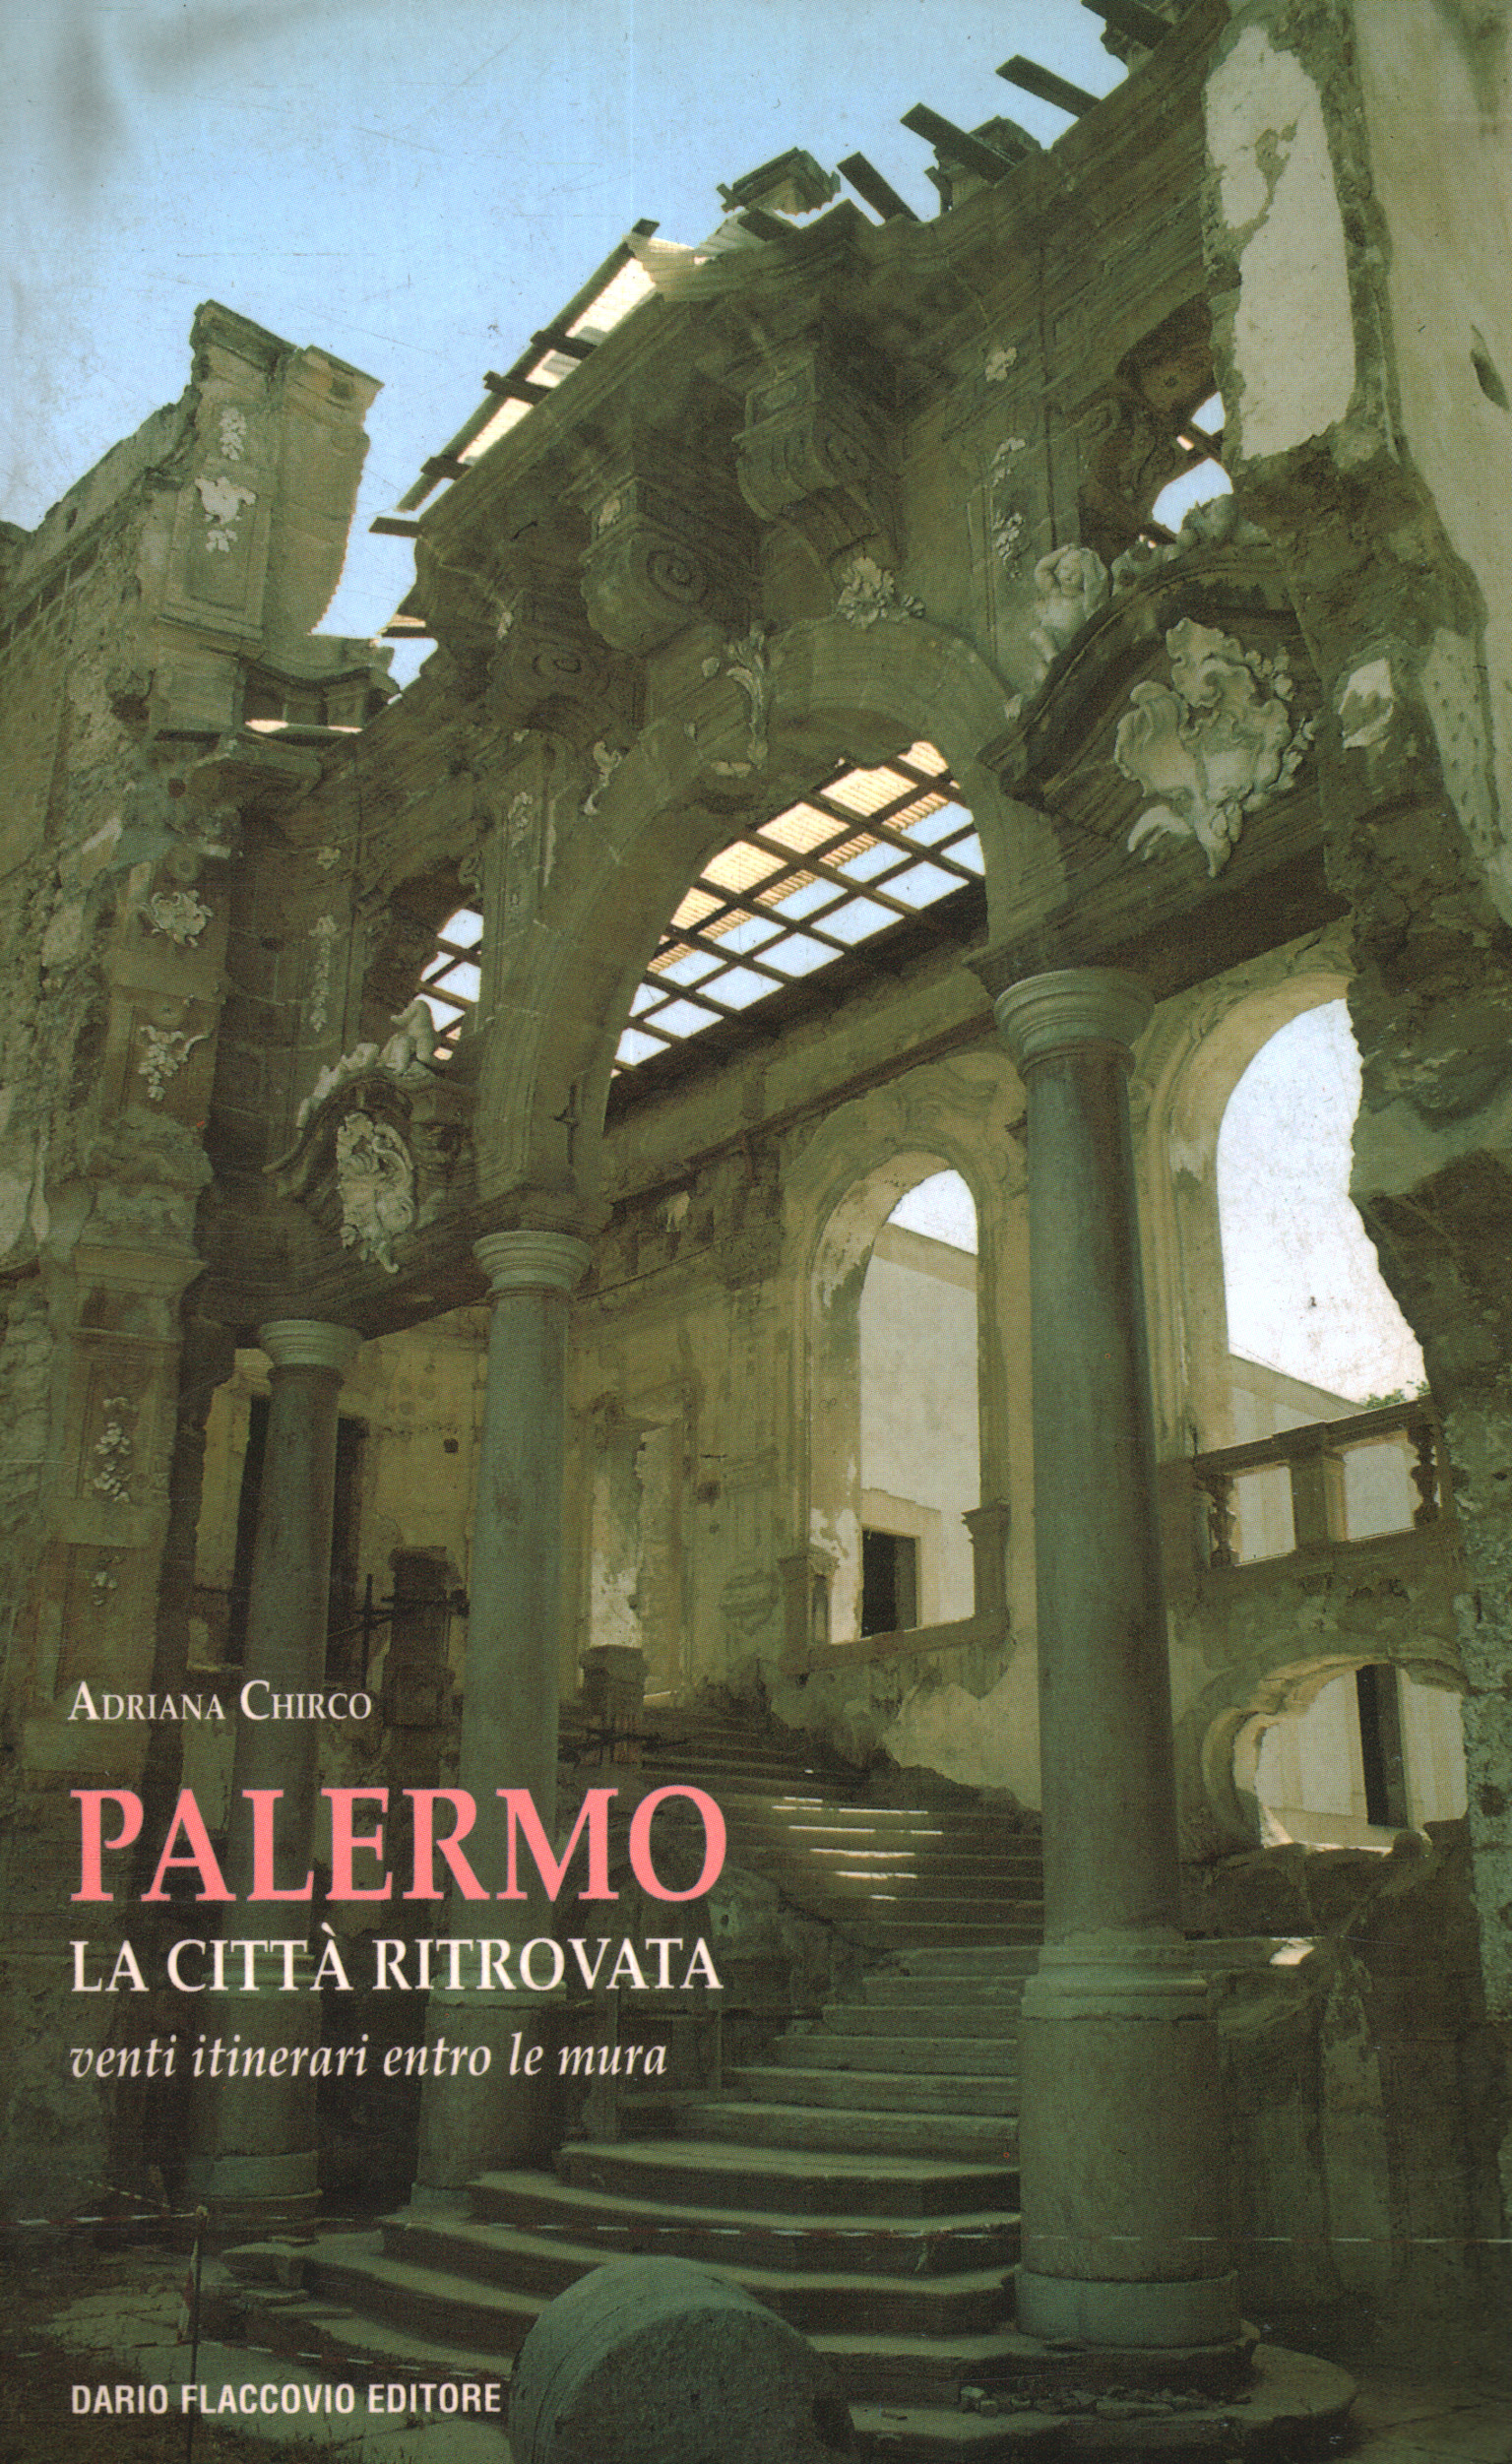 Palermo. Die Stadt gefunden